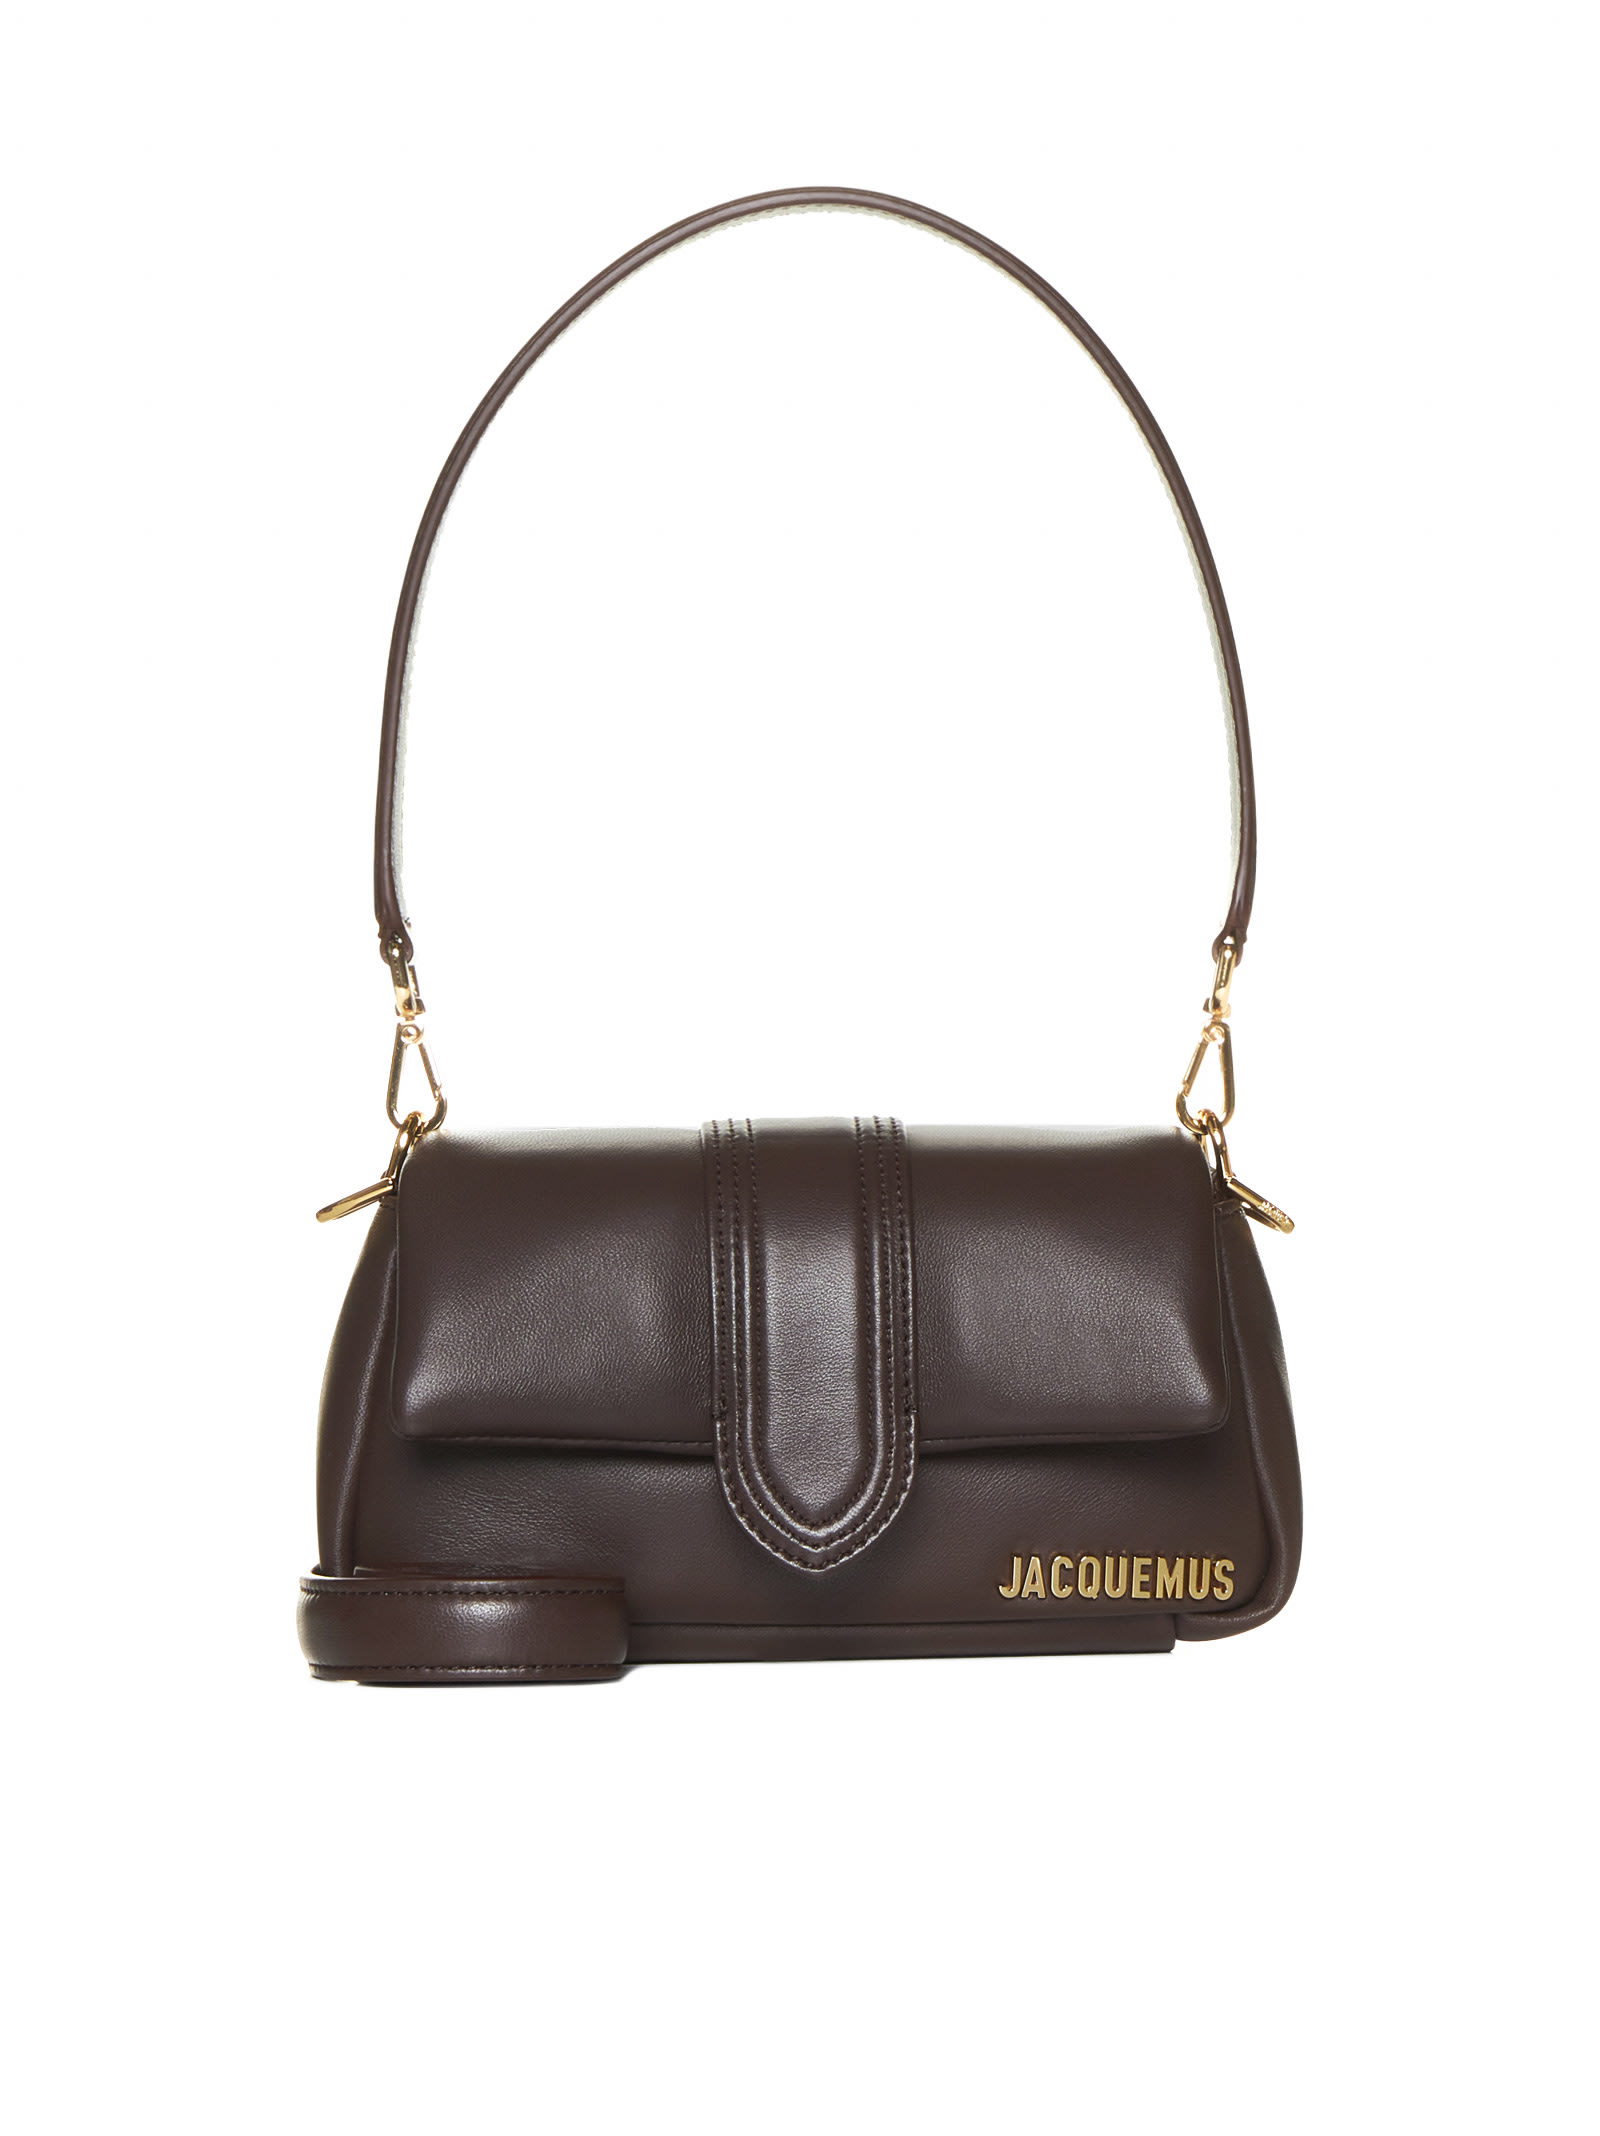 Jacquemus Shoulder Bag In Medium Brown